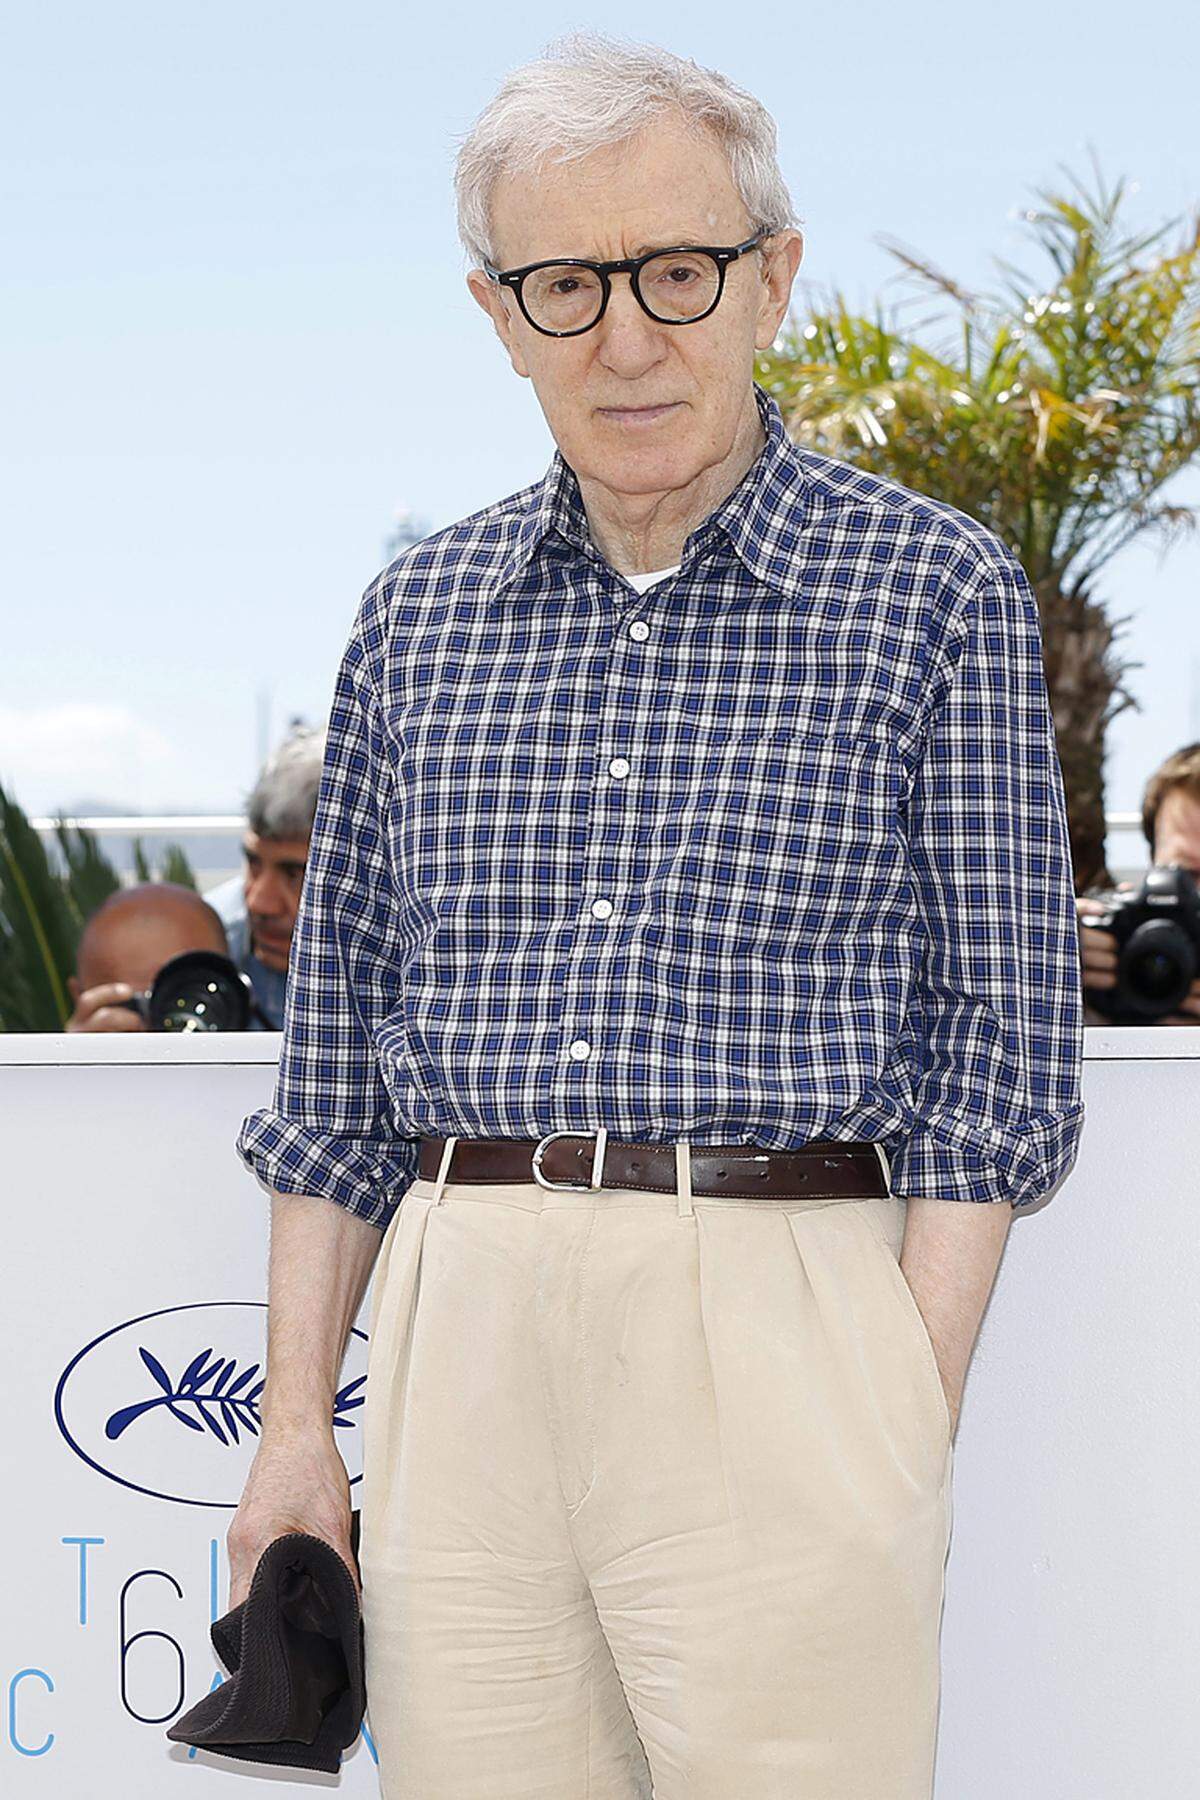 Woody Allen ist einer der produktivsten Regisseure unserer Zeit. Langsam steuert Woody Allen auf seine 50. Regiearbeit zu. Immer wieder war er selbst Hauptdarsteller in seinen Filmen, in Nuancen derselben Rolle: die des liebenswerten, aber glücklosen Verlierers, der sich eigentlich nur durch die Welt und das Leben kämpfen will.  "Filmemachen ist eine gute Ablenkung von den Qualen des Lebens", sagte der "Stadtneurotiker" einmal. BEgonnen hat er Comedian. Regie zu führen beginnt er, damit keiner in seine Drehbücher reinpfuschen kann. Am 1. Dezember wurde der filmische Vielarbeiter 80. "Ich habe keine Angst vor dem Tod. Ich möchte nur nicht dabei sein, wenn's passiert", gehört zu seinen bekanntesten Zitaten.